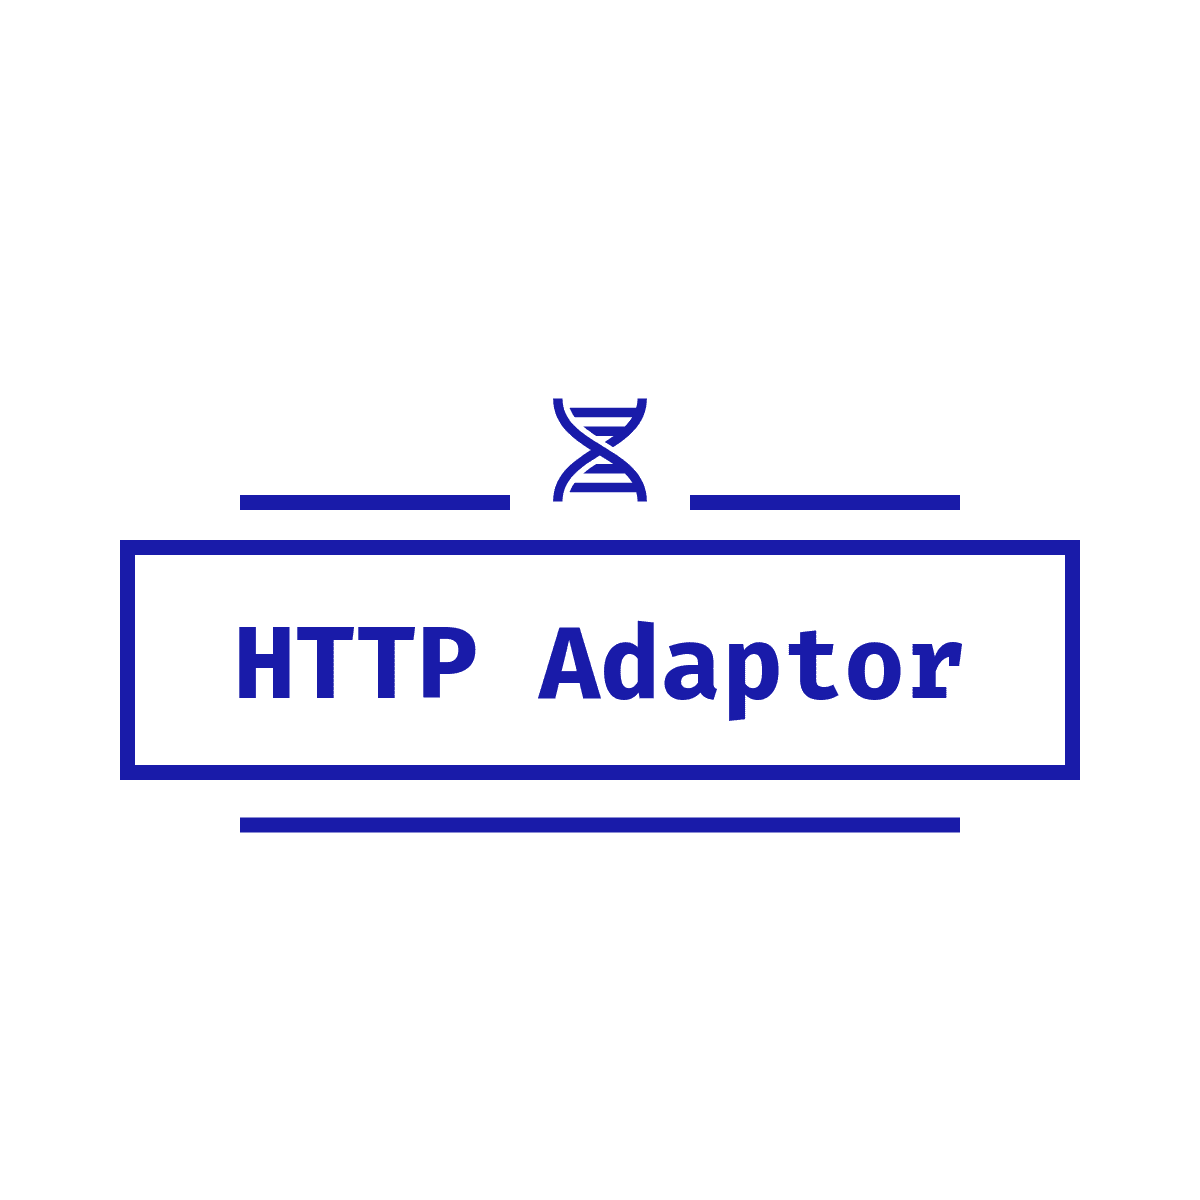 Http Adapter logo